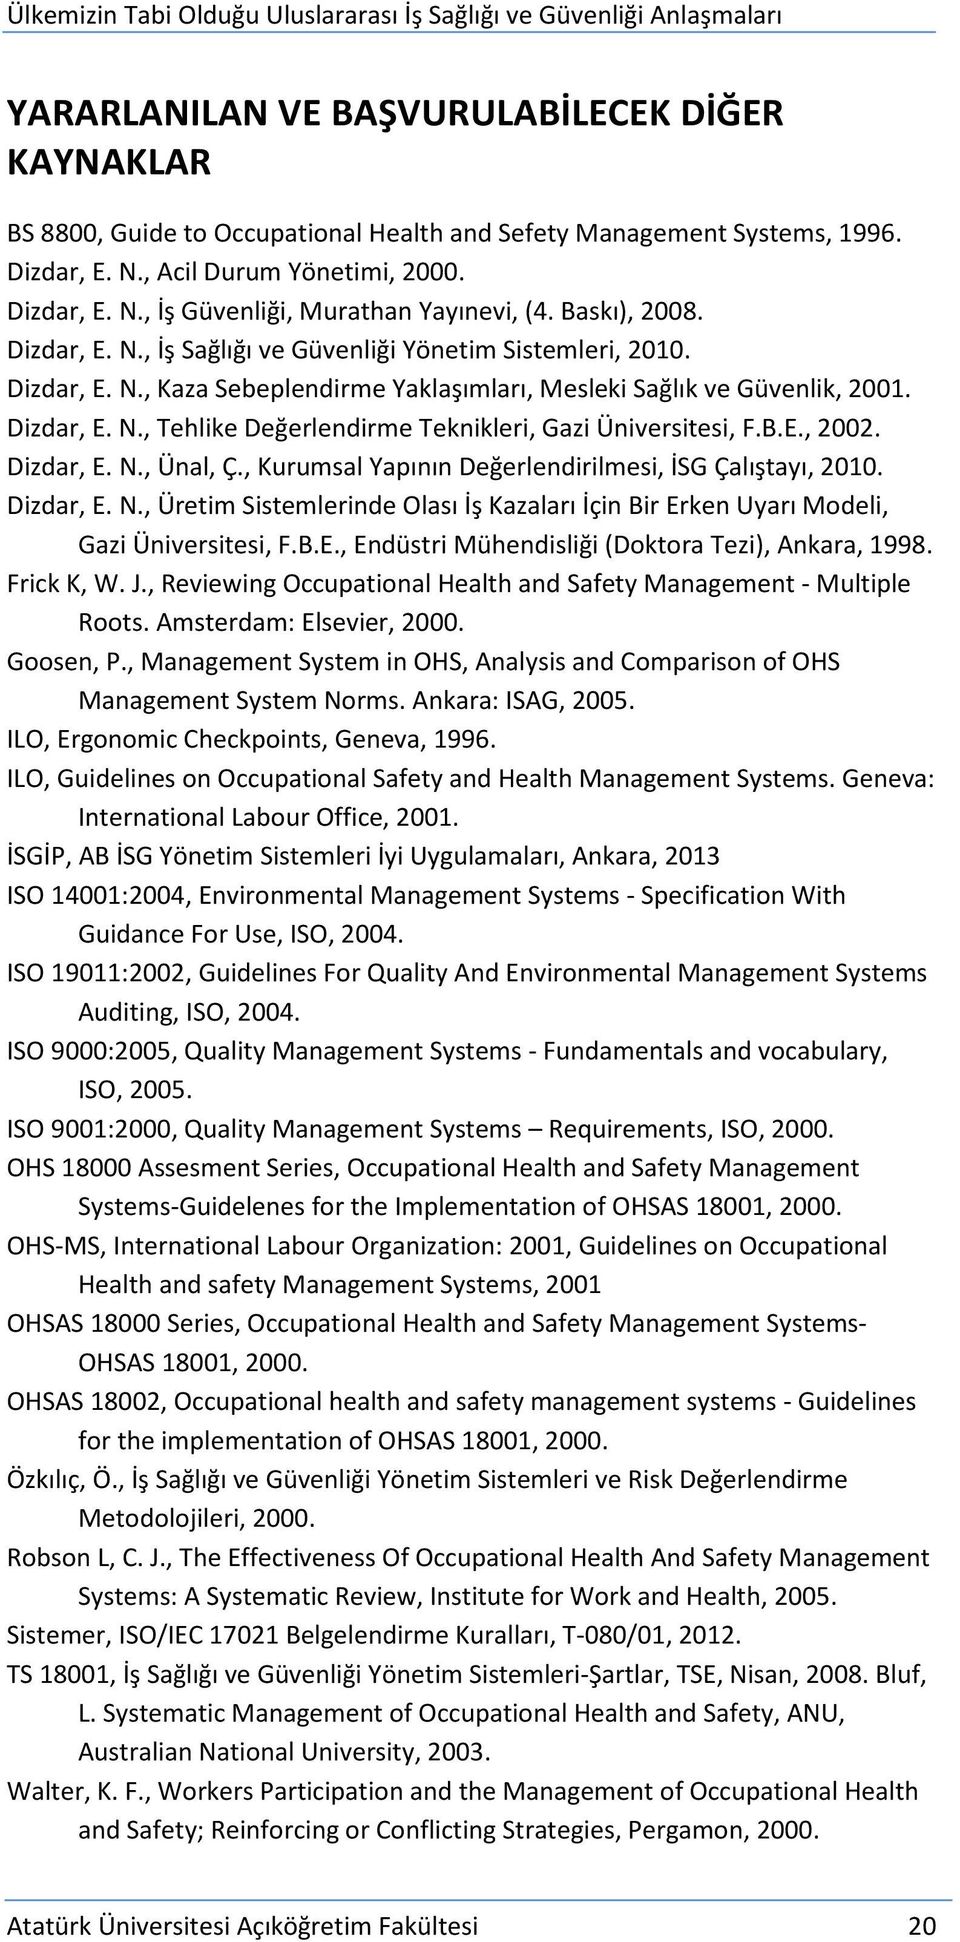 B.E., 2002. Dizdar, E. N., Ünal, Ç., Kurumsal Yapının Değerlendirilmesi, İSG Çalıştayı, 2010. Dizdar, E. N., Üretim Sistemlerinde Olası İş Kazaları İçin Bir Erken Uyarı Modeli, Gazi Üniversitesi, F.B.E., Endüstri Mühendisliği (Doktora Tezi), Ankara, 1998.